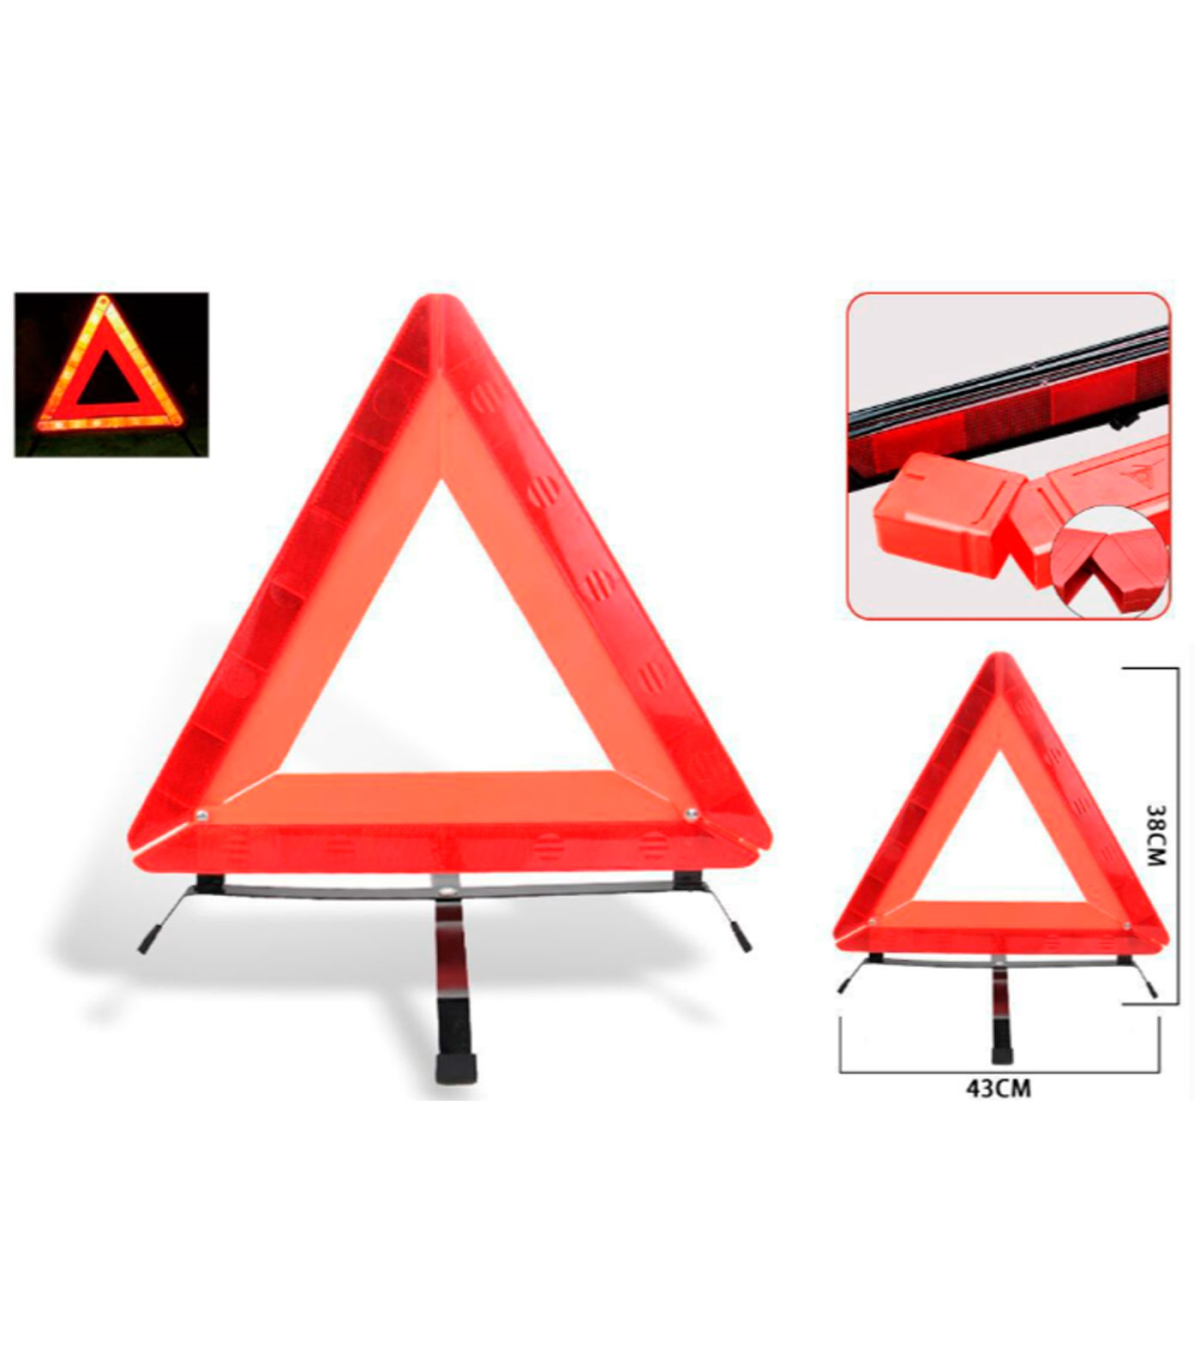 Tradineur - Triángulo reflectante de emergencia homologado para coche,  incluye estuche de plástico, señalización, advertencia, a